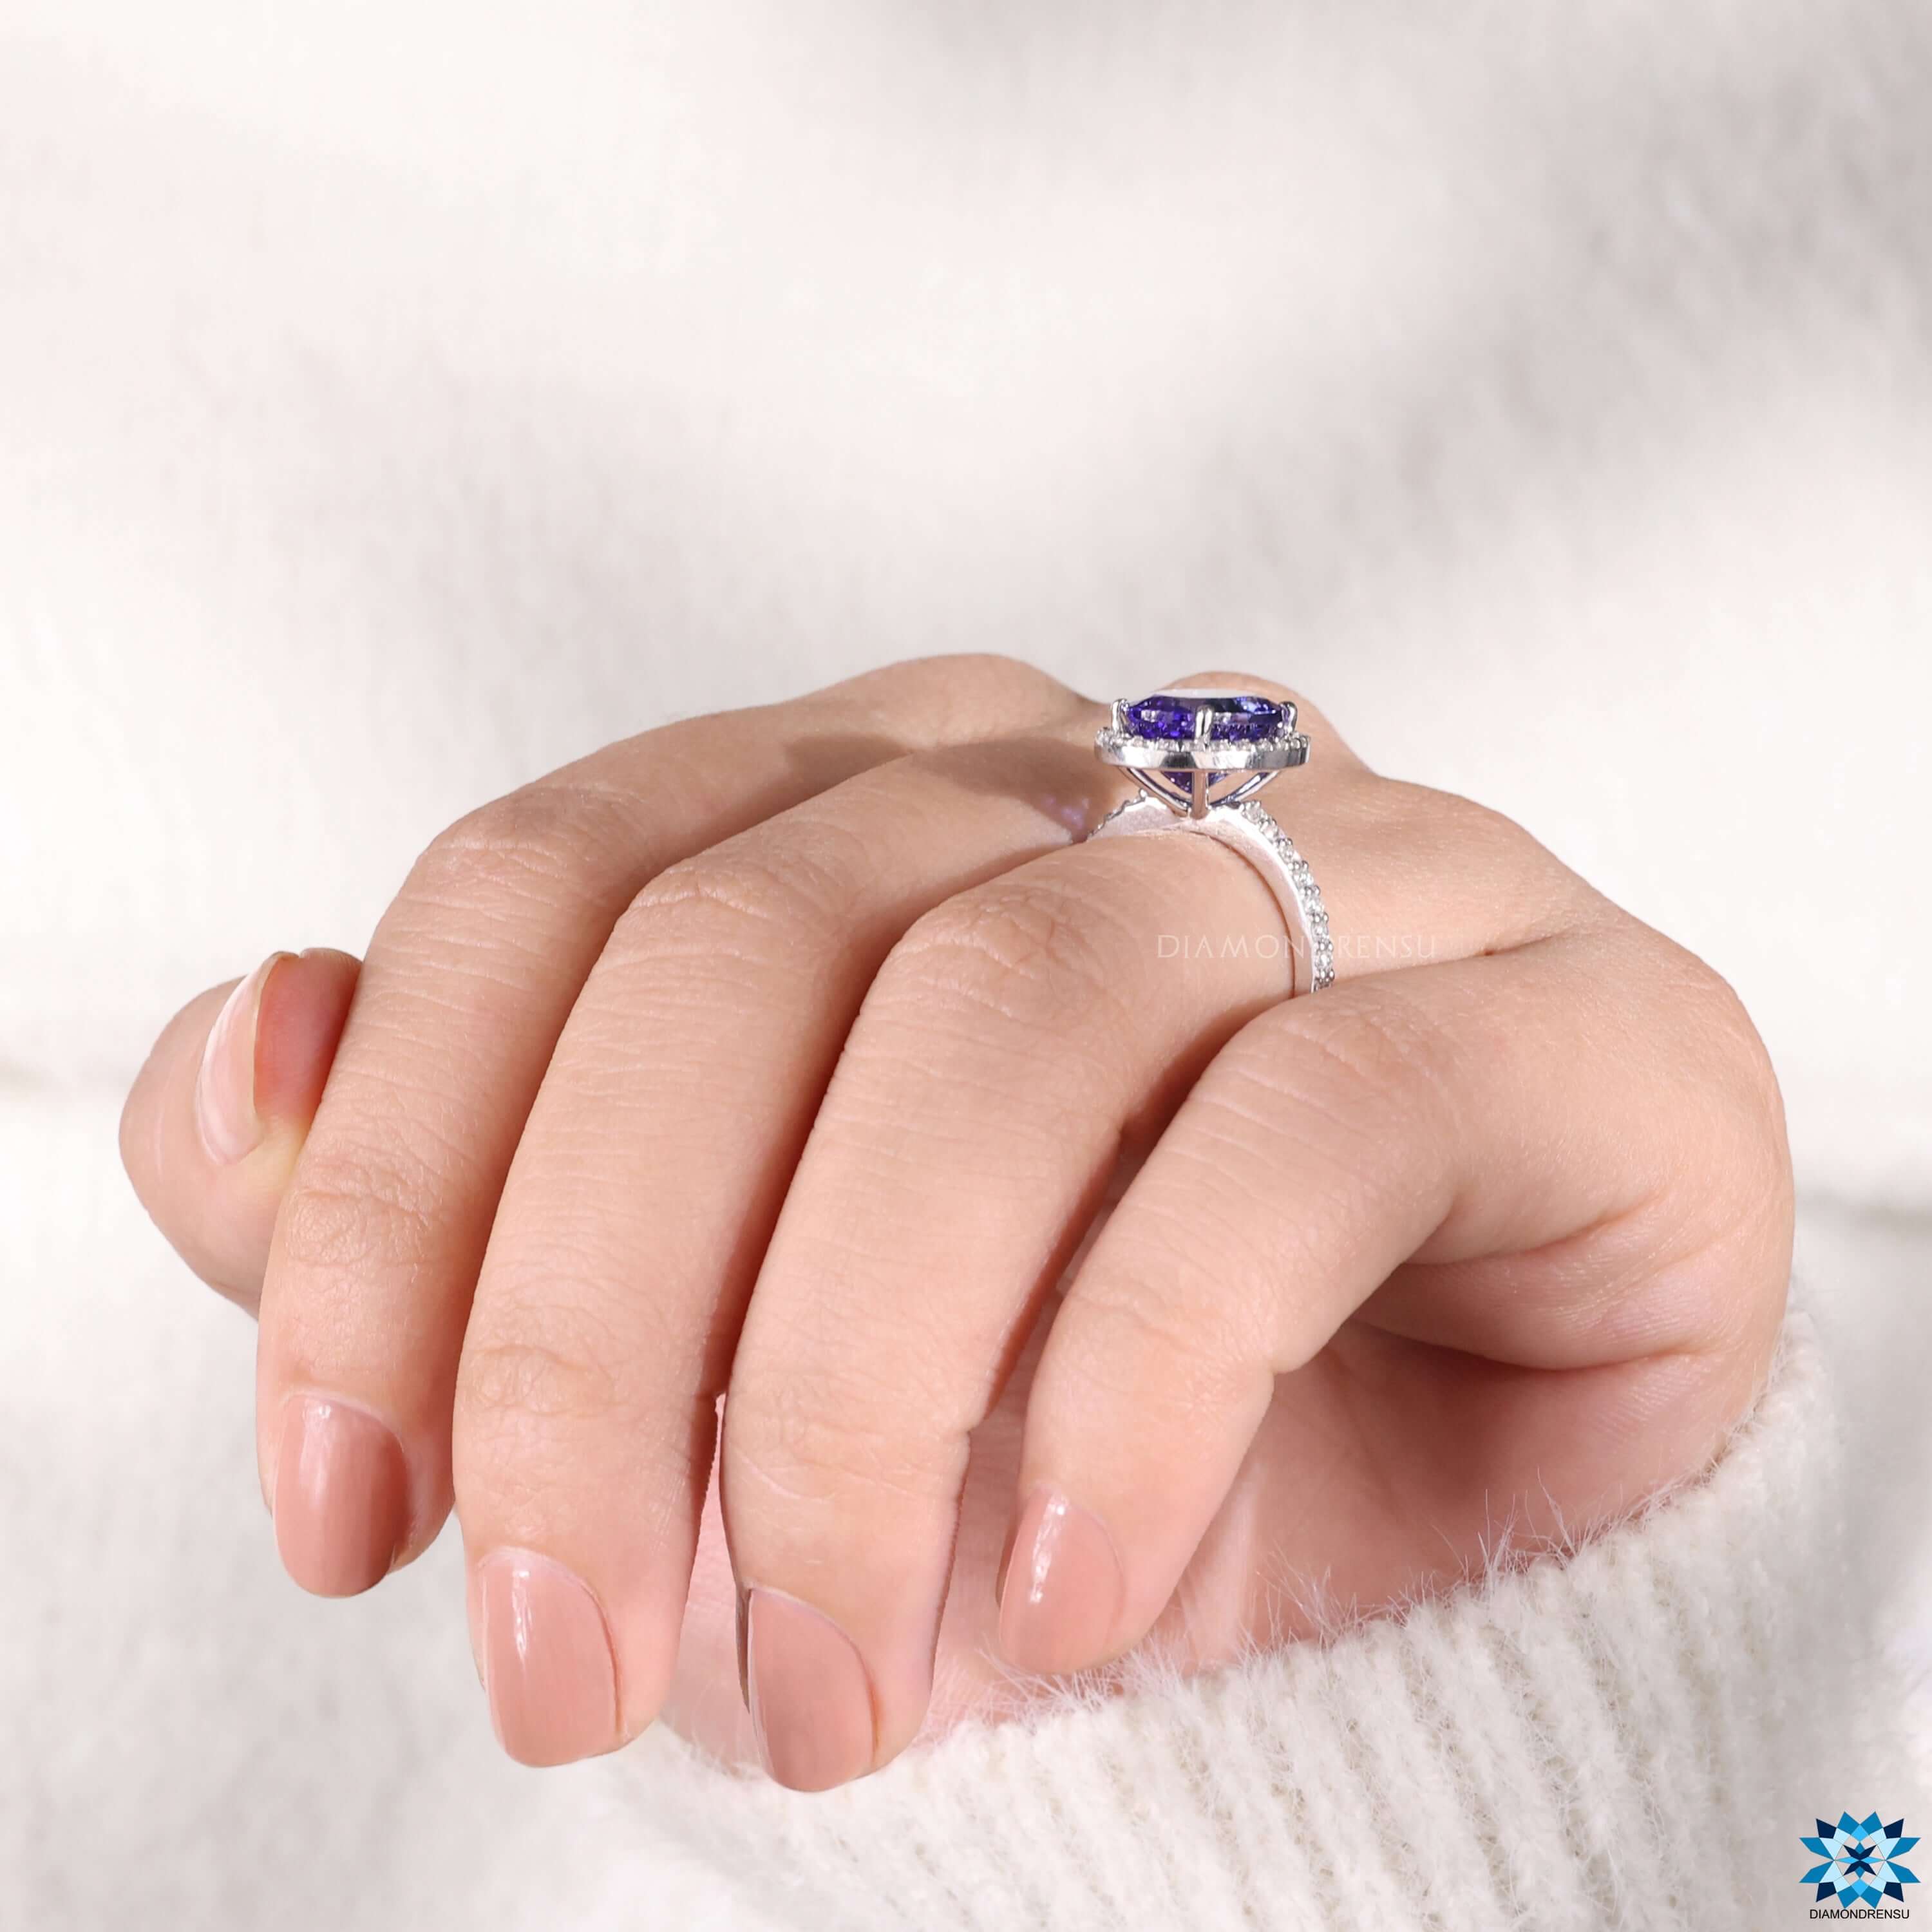 anniversary gift ring for her - diamondrensu